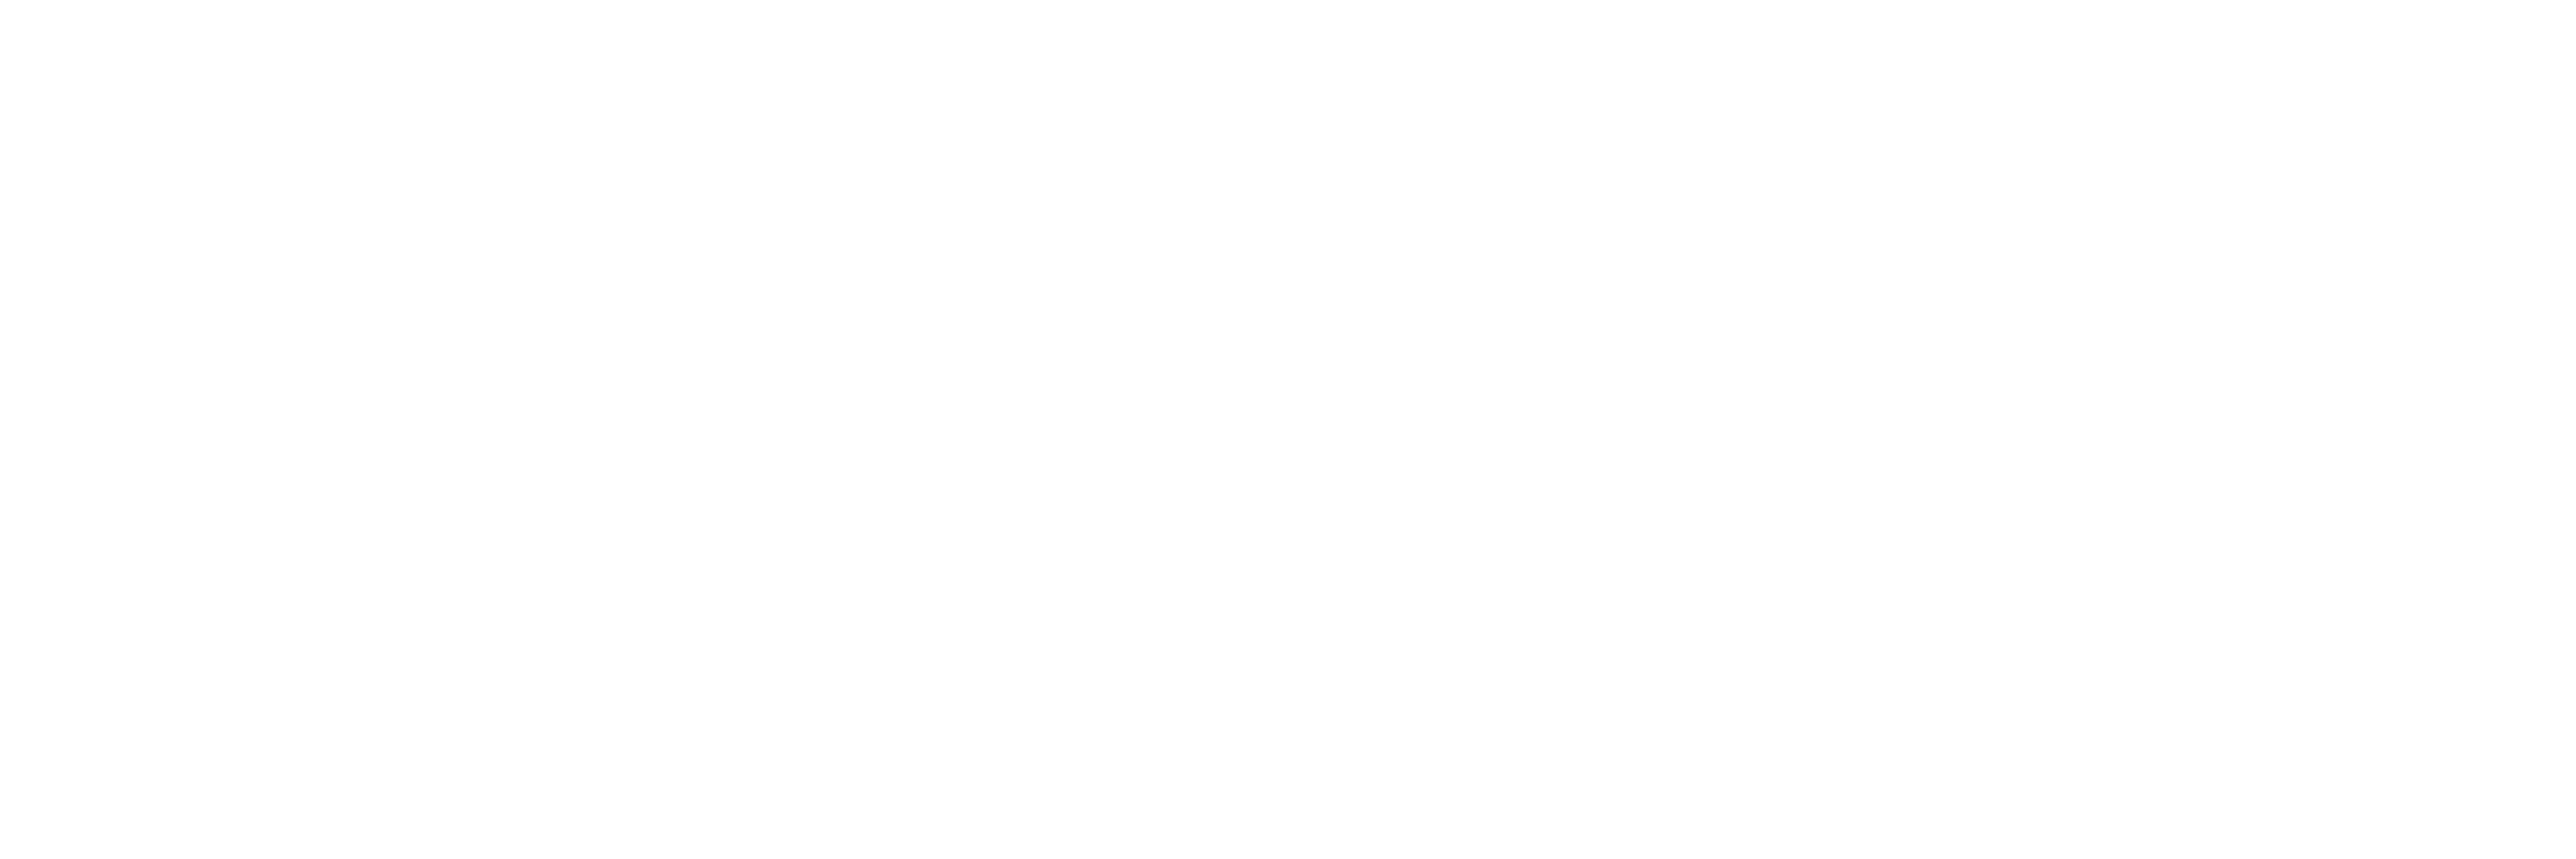 Auburn 2025 2026 Academic Calendar